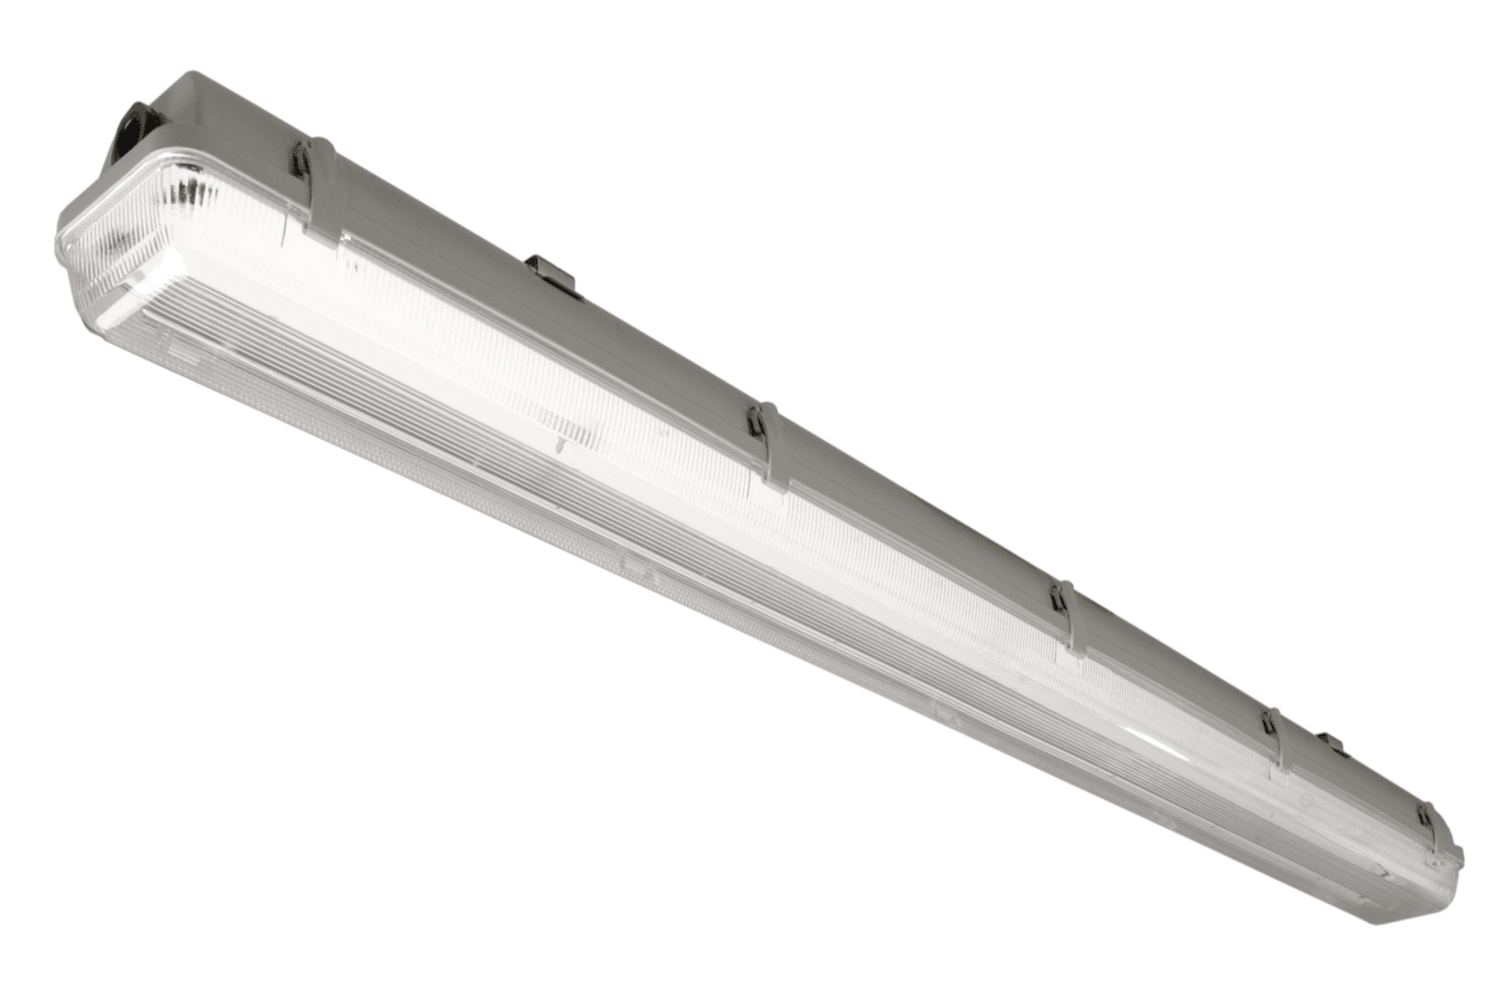 RGLED – Regleta para tubo LED o fluorescente – Arlús Iluminación